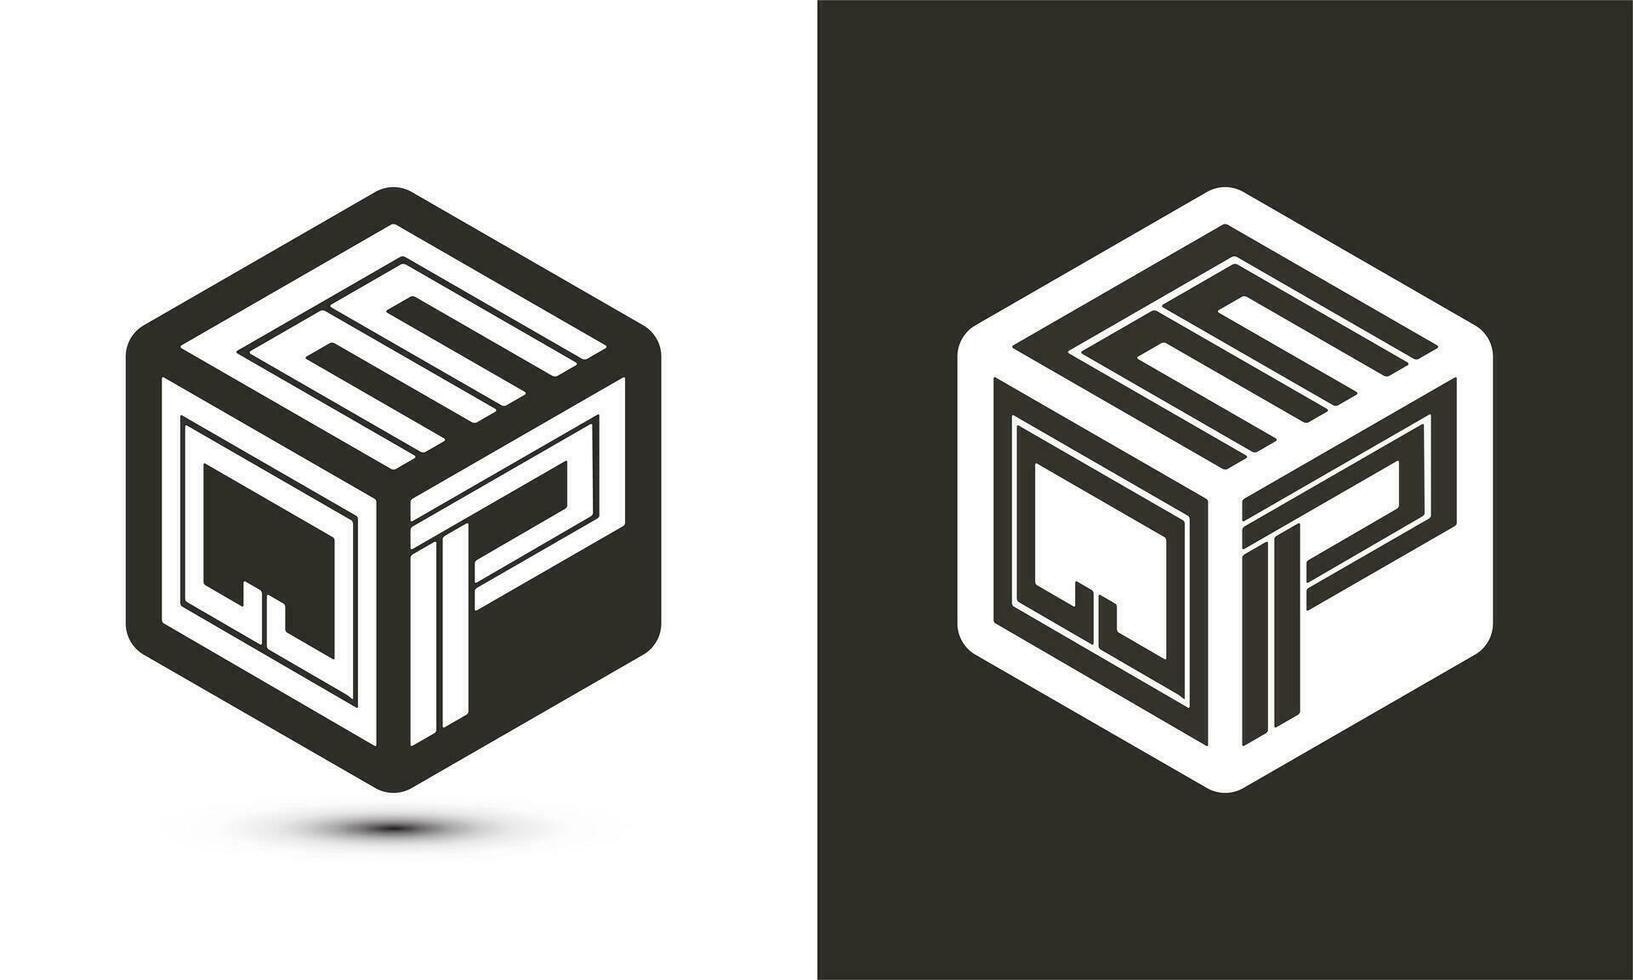 eqp brief logo ontwerp met illustrator kubus logo, vector logo modern alfabet doopvont overlappen stijl.